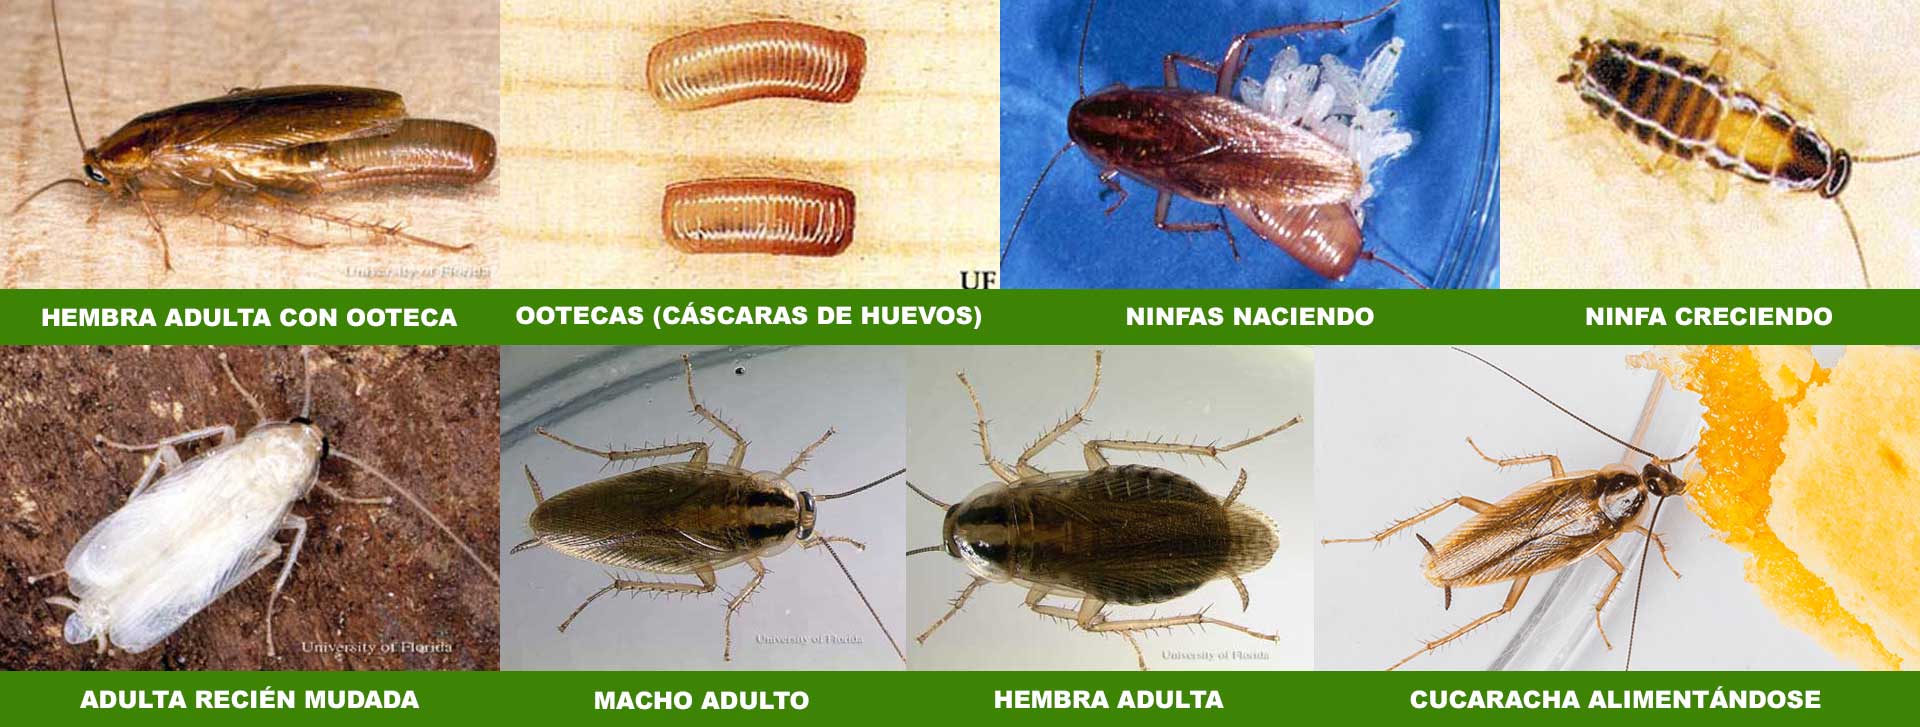 Cucarachas - Información evolución desde que nacen